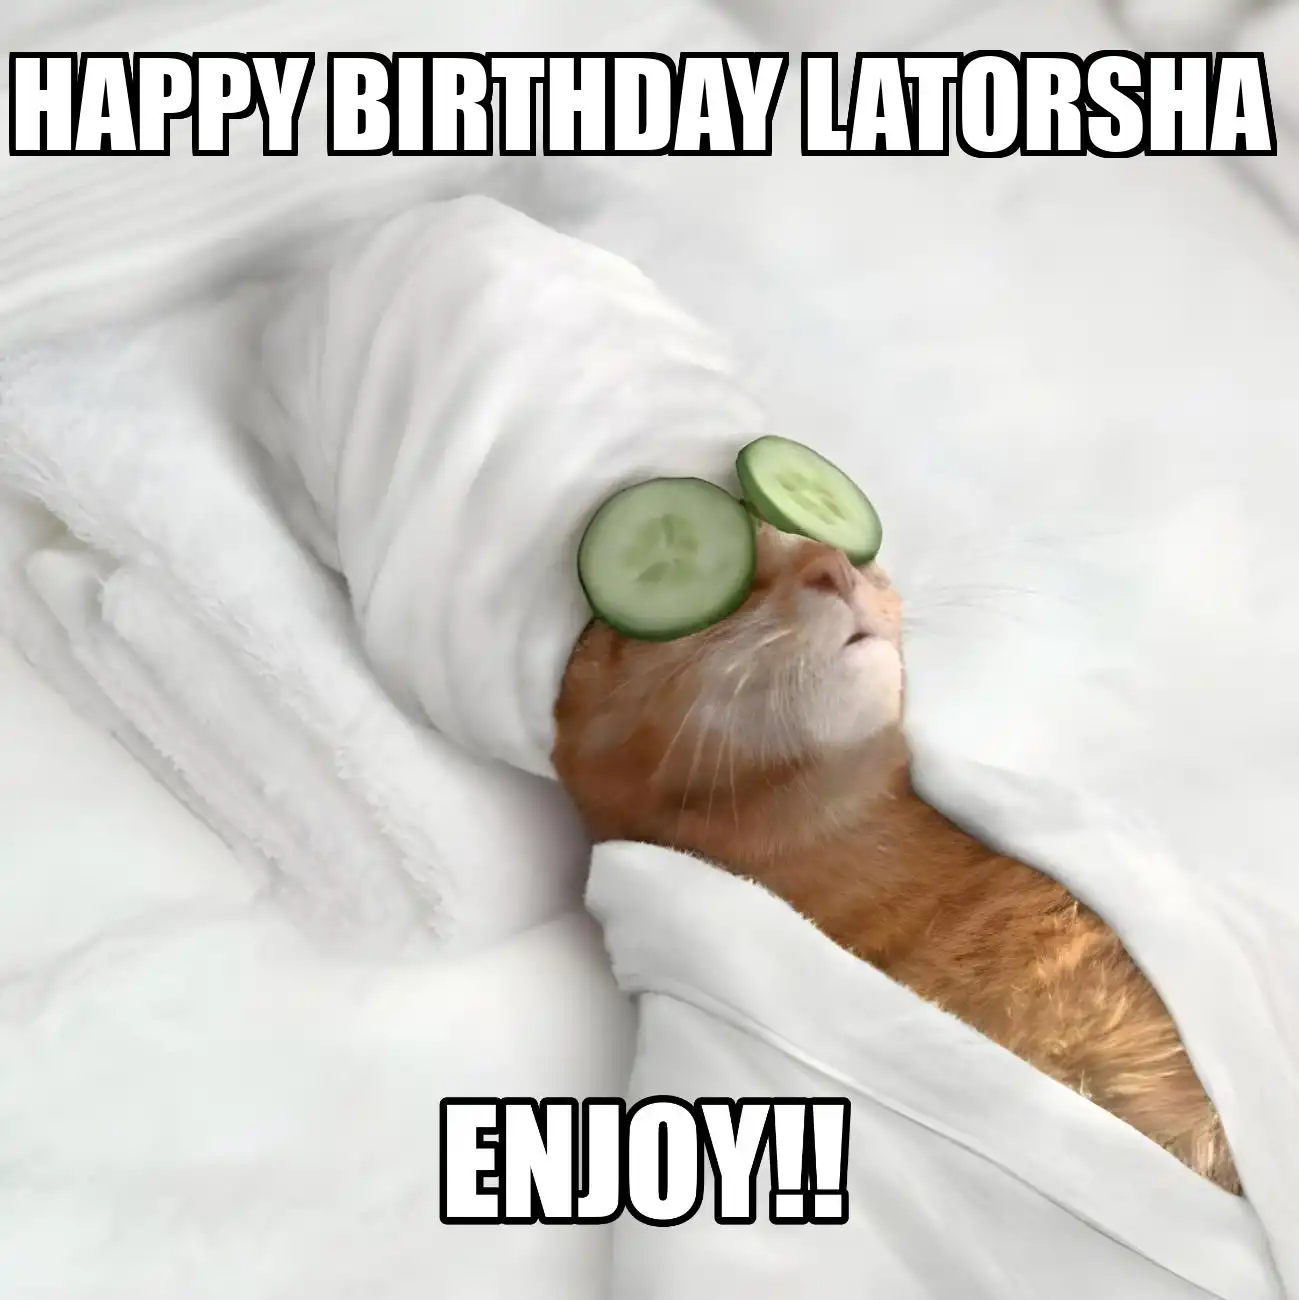 Happy Birthday Latorsha Enjoy Cat Meme